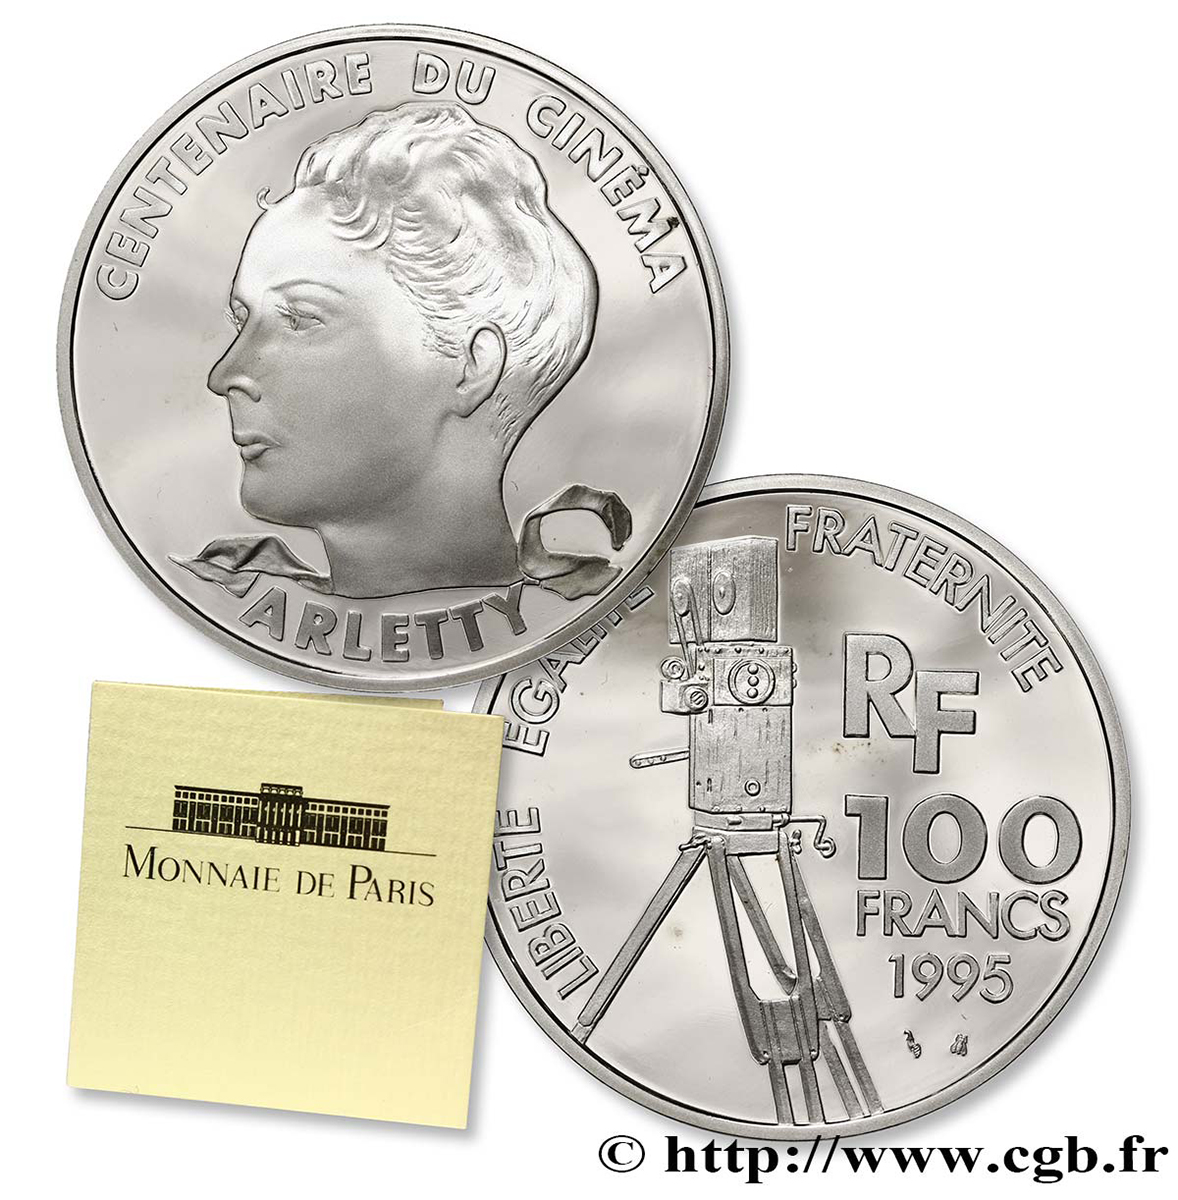 Belle Épreuve 100 francs - Arletty 1995 Paris F5.1642 2 ST70 